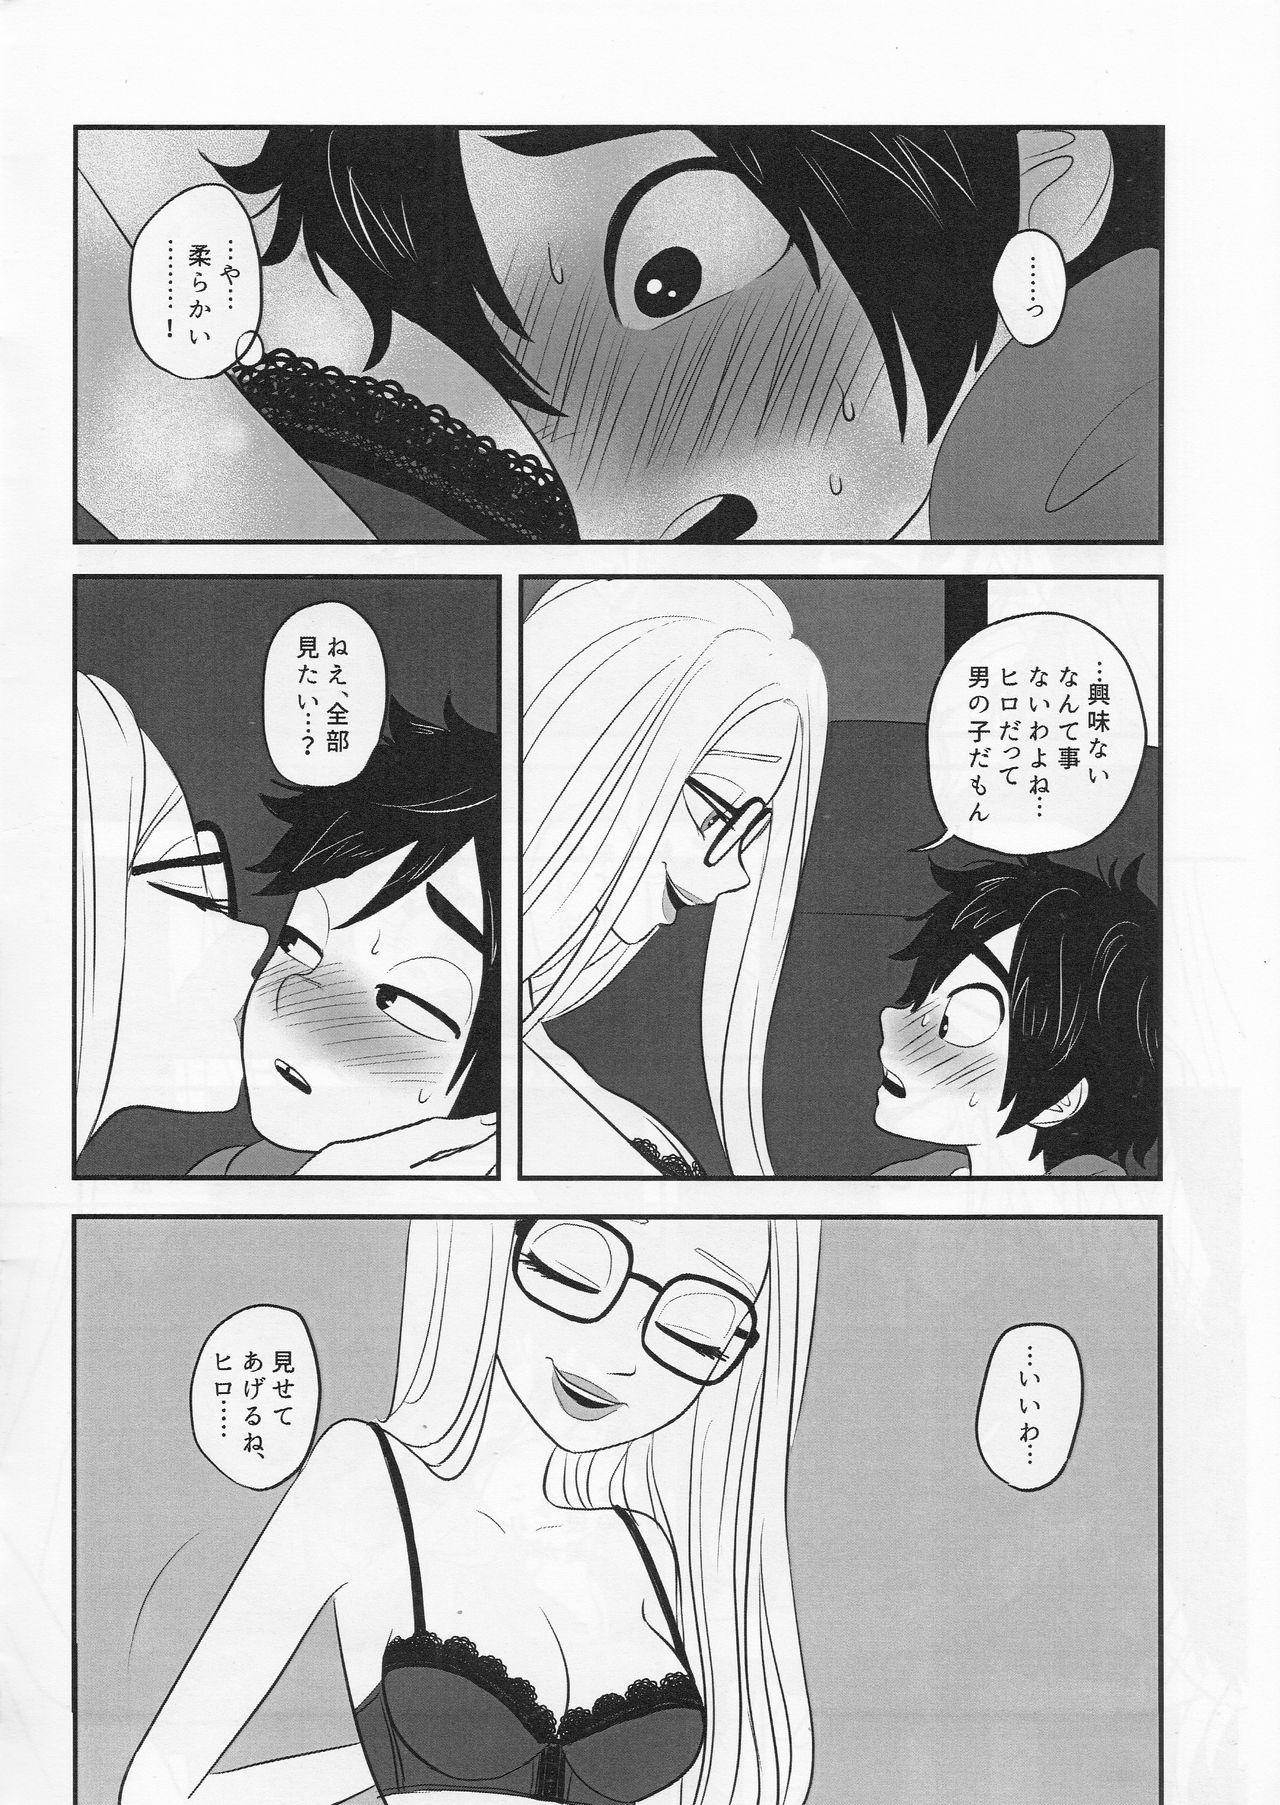 Rubdown "Shindanmei, Shishunki." - Big hero 6 Bokep - Page 7